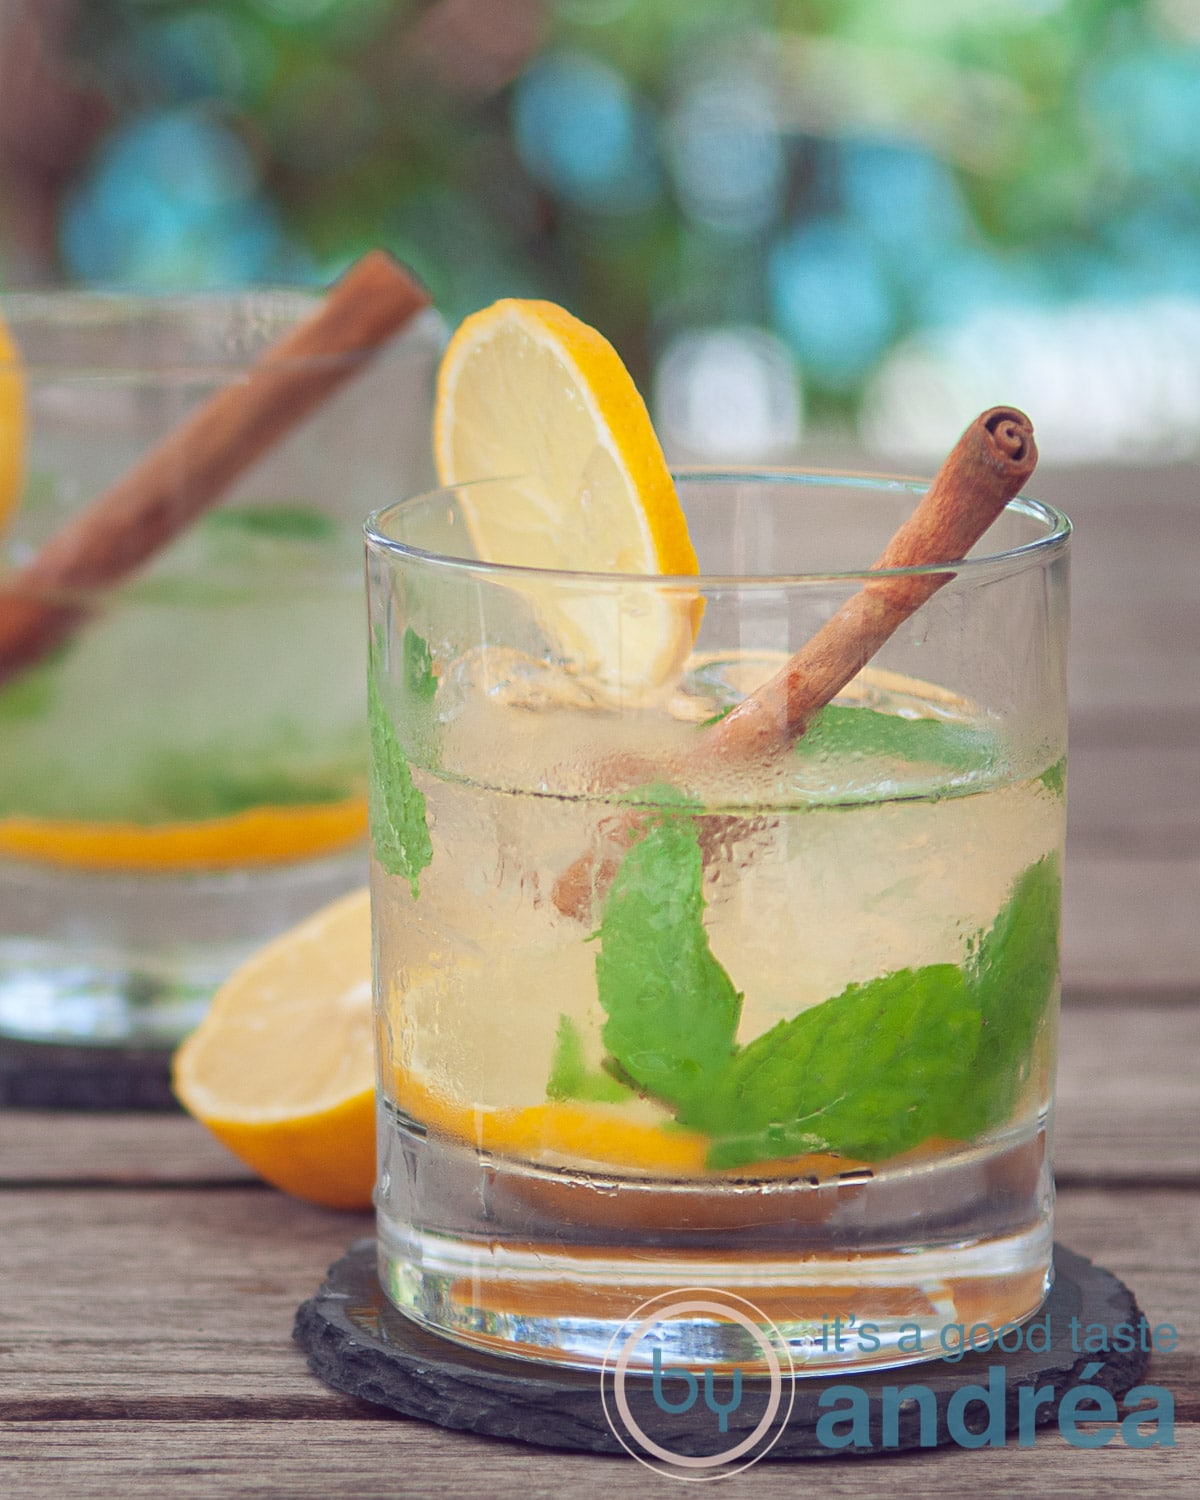 Twee glazen Caipirinha thee cocktail met munt, kaneel en citroen tegen een zomerse achtergrond